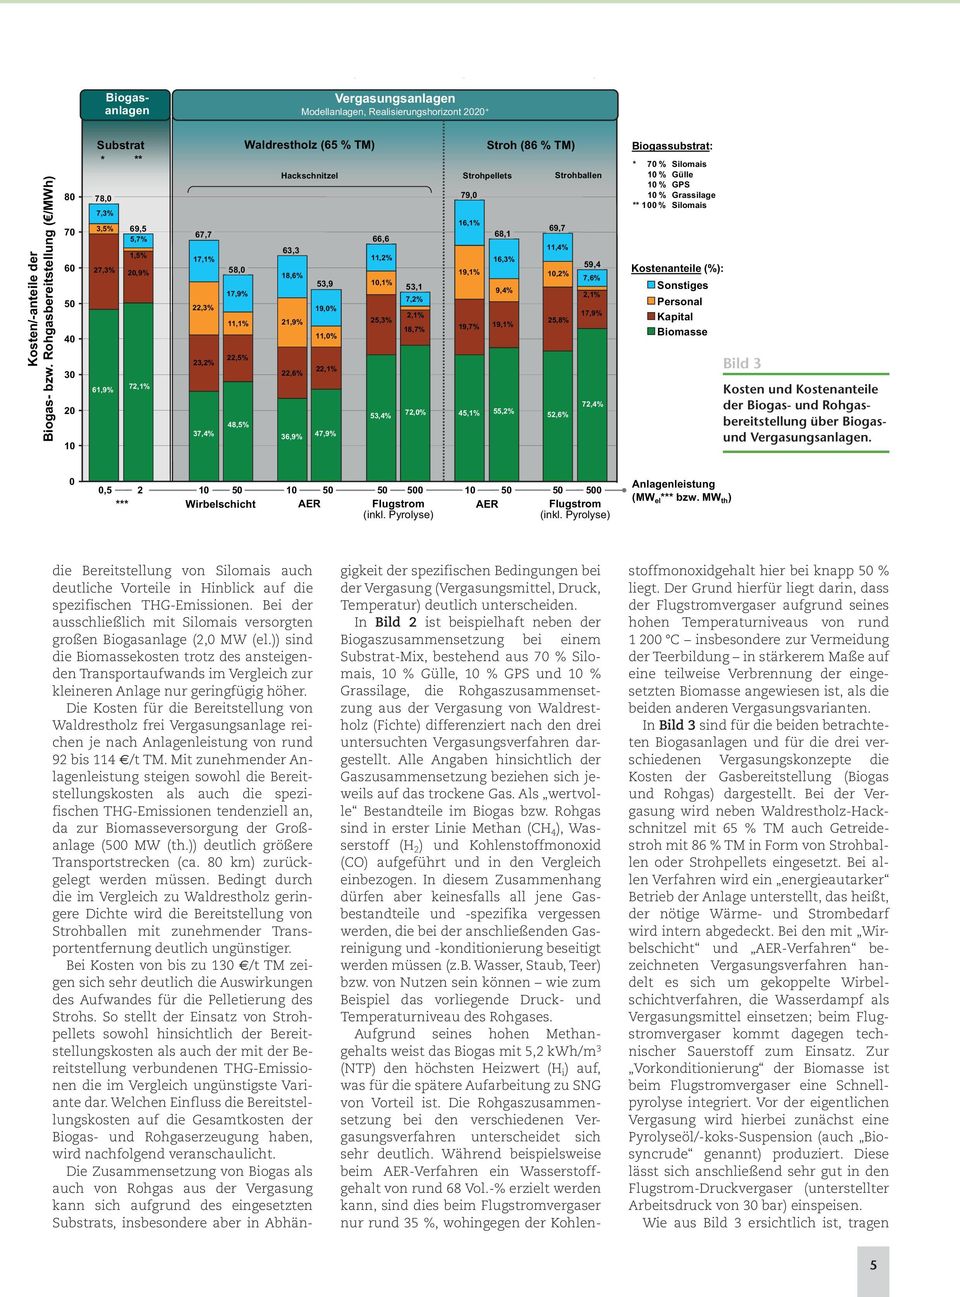 )) sind die Biomassekosten trotz des ansteigenden Transportaufwands im Vergleich zur kleineren Anlage nur geringfügig höher.